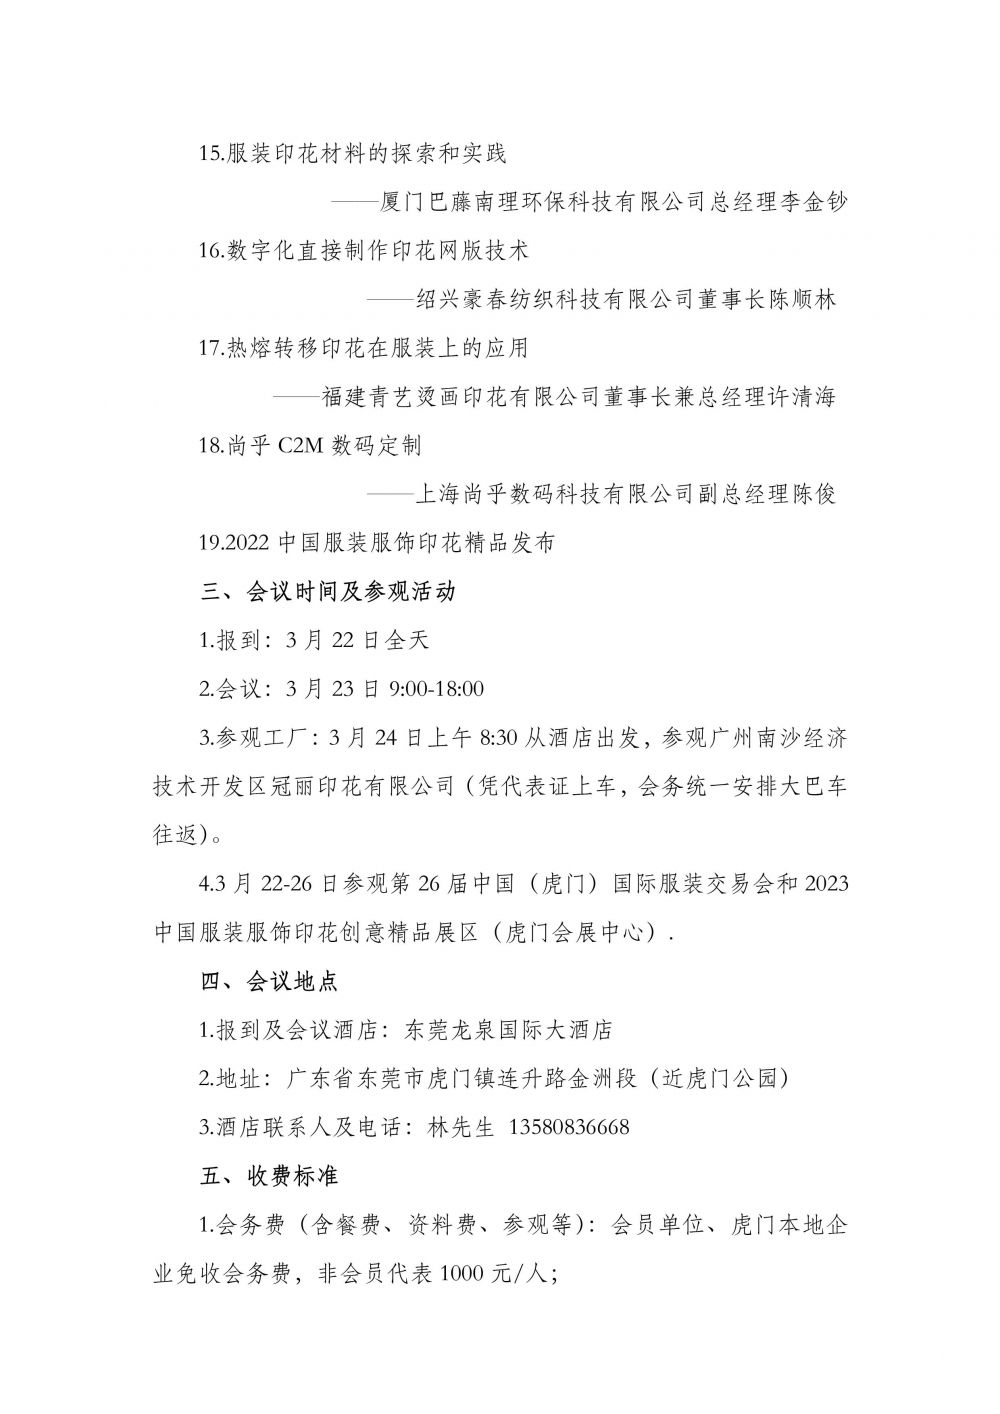 关于召开2023中国服装服饰印花发展大会的通知-4.jpg